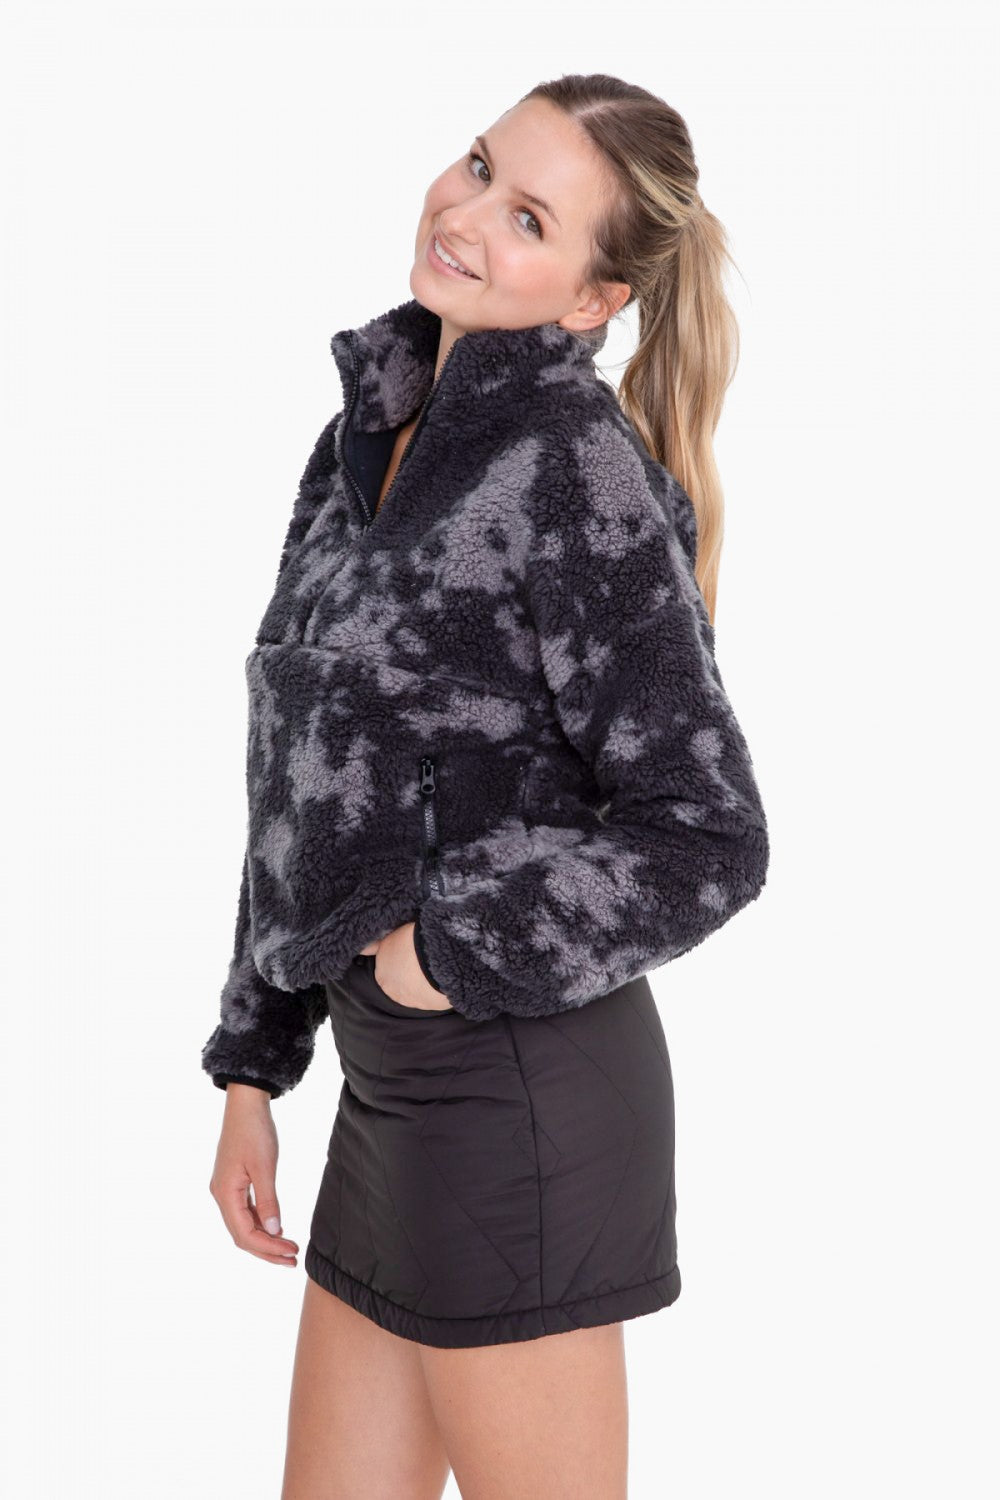 Ladies Half Zip Sherpa Pullover Print Jacket